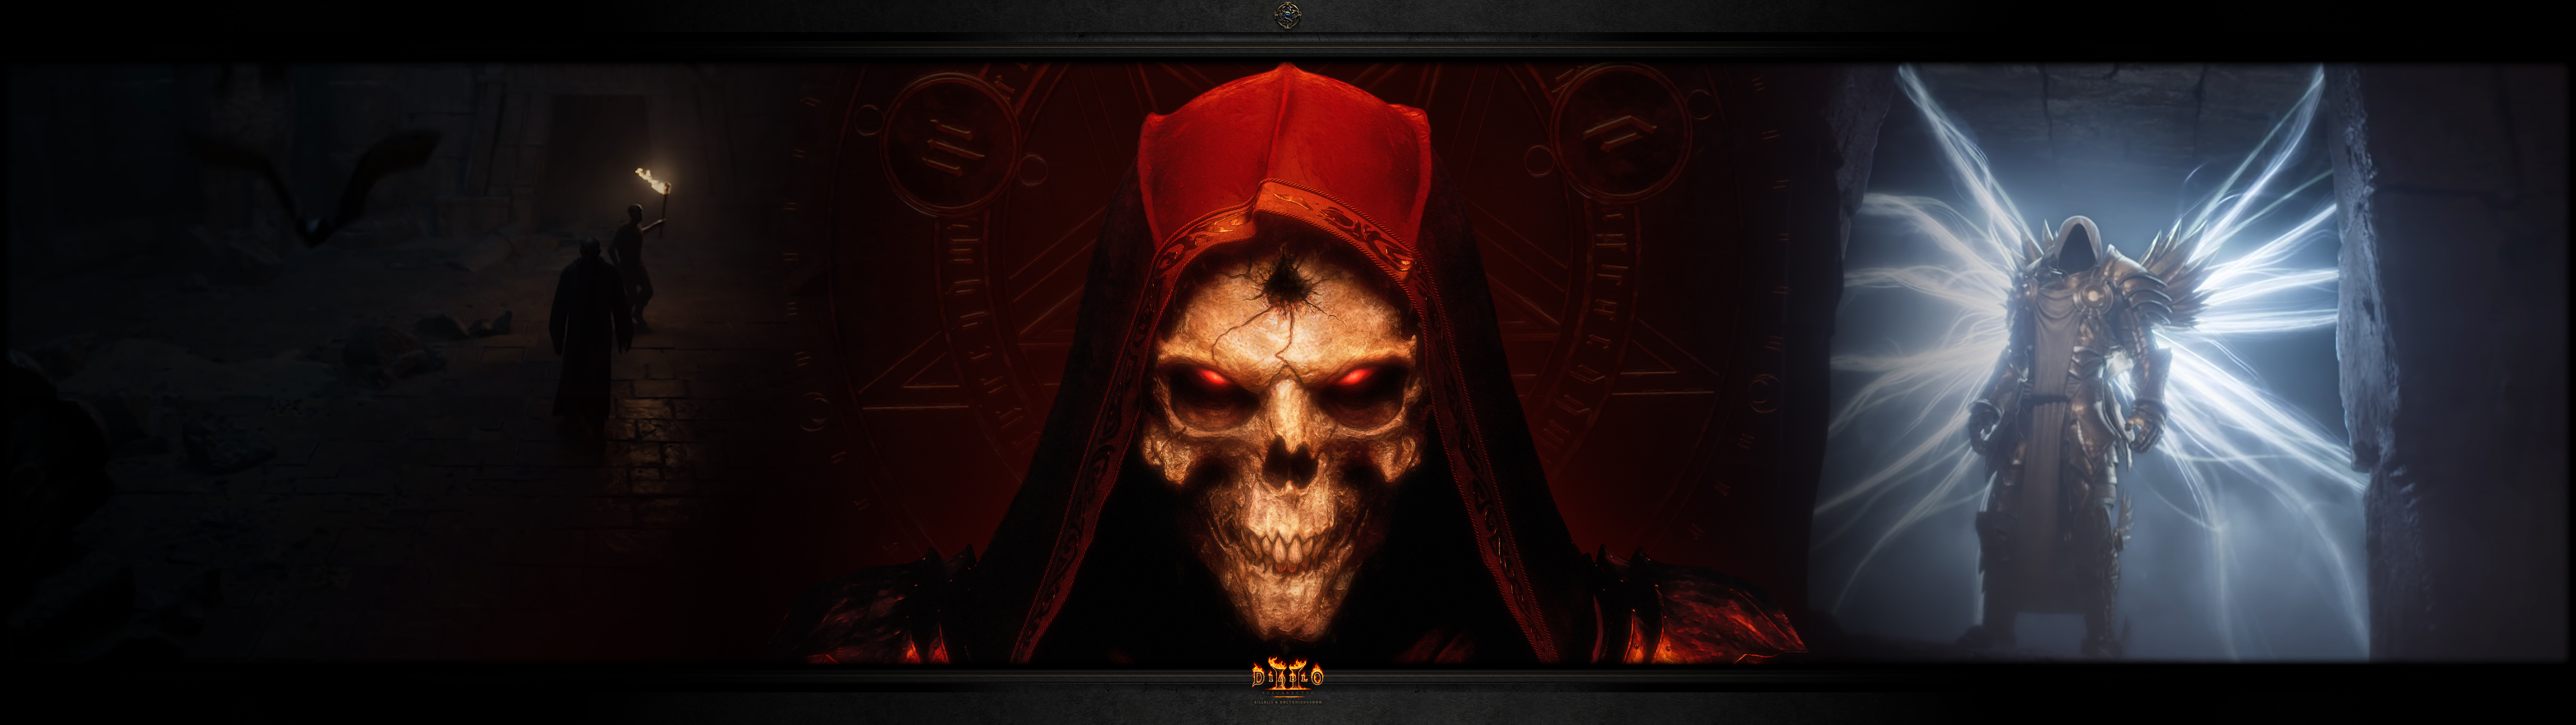 Diablo II: Rez Ultra-wide #1: The Dark Wanderer